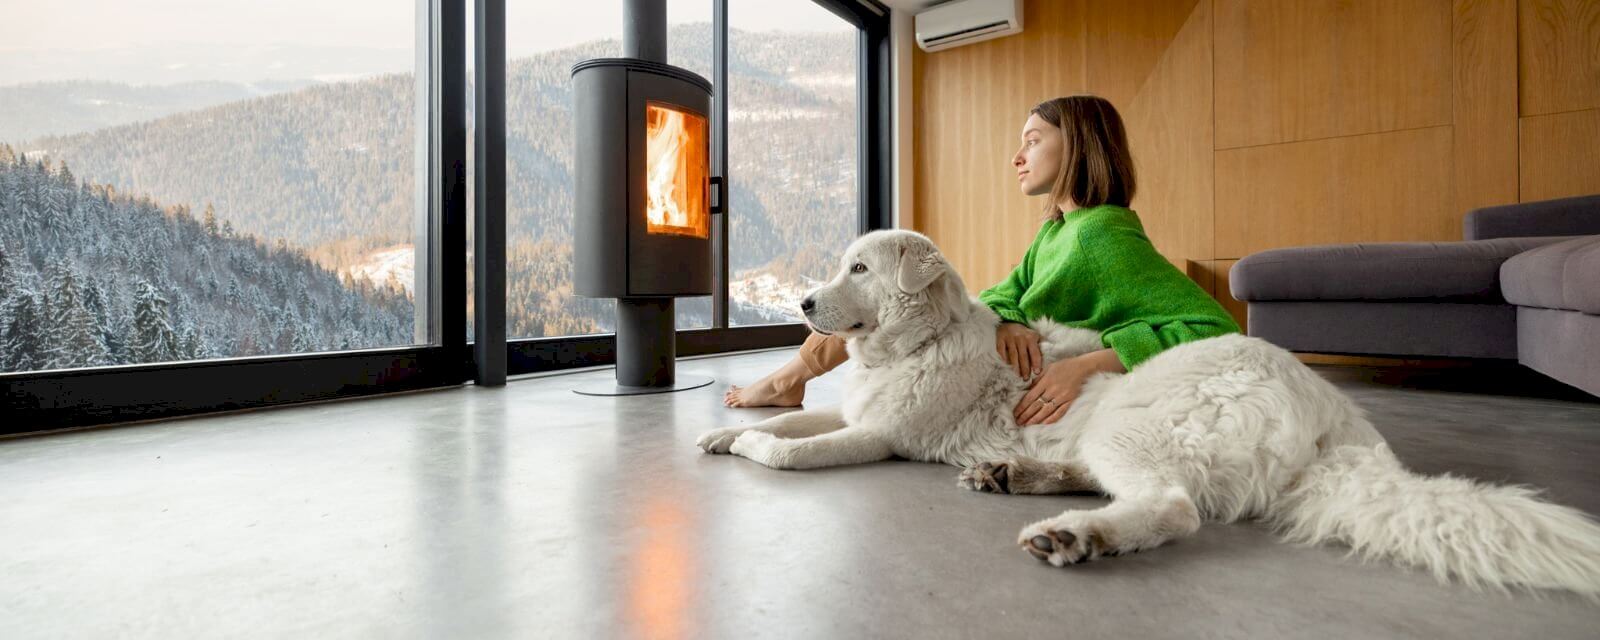 Chauffage : Comment rendre votre maison plus agréable en hiver ?